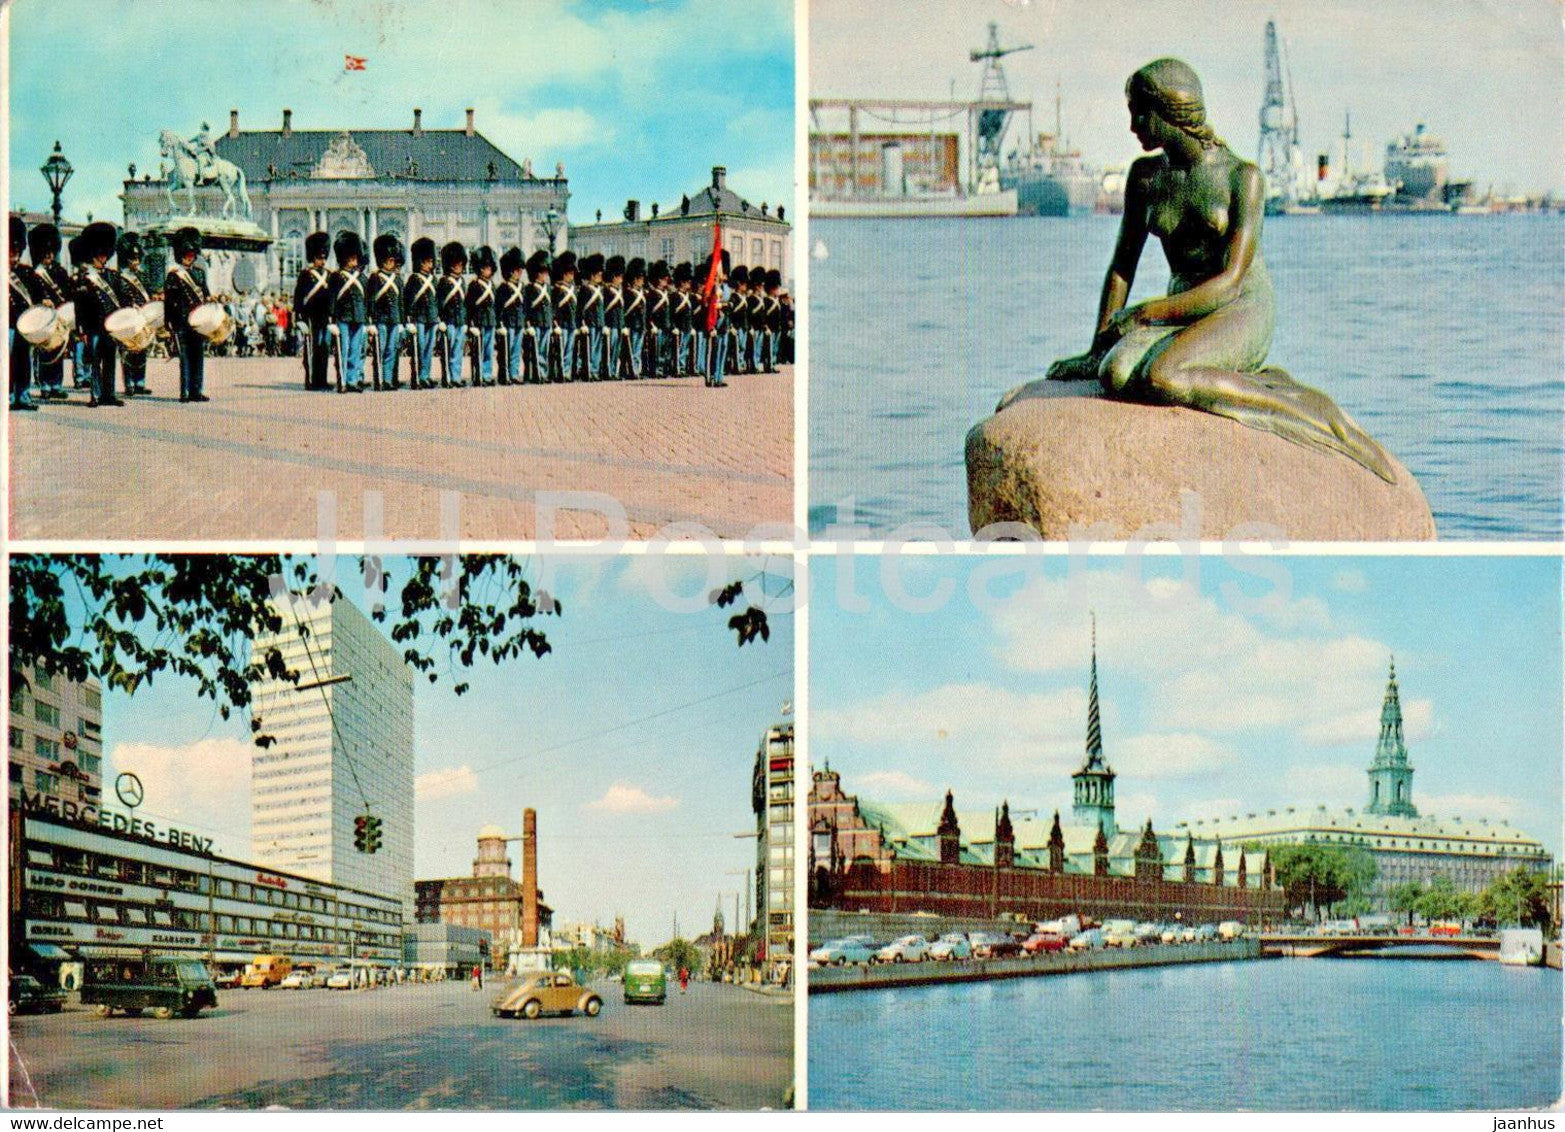 Copenhagen - Kopenhagen - multiview - Little Mermaid - guard - T 37 - 1974 - Denmark - used - JH Postcards